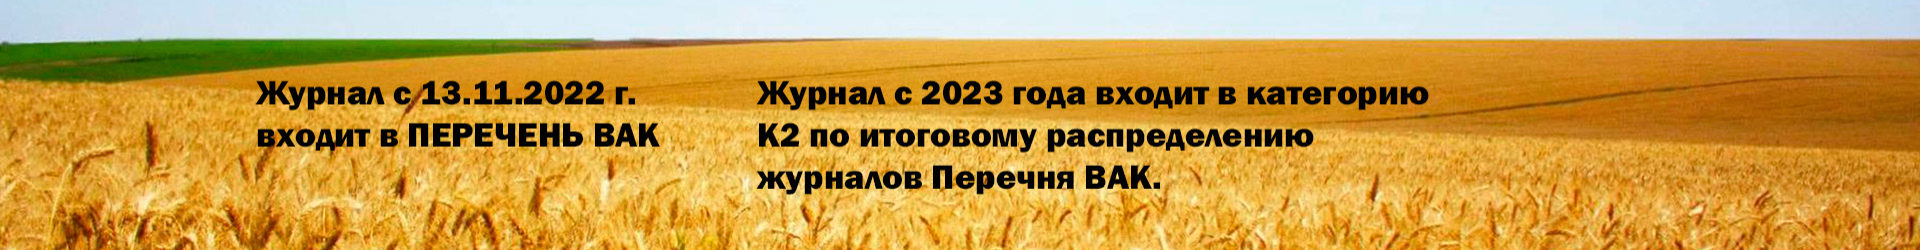 Агропродовольственная политика России